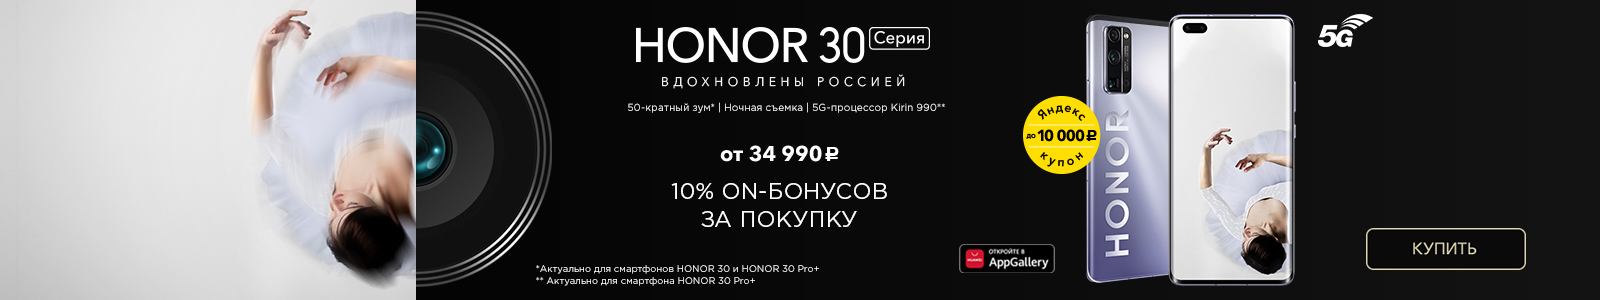 Промокод honor. Выгодные промокоды Honor. Honor 30 вдохновлен Россией. Компания Honor выступает против Apple. Кто владелец Honor.